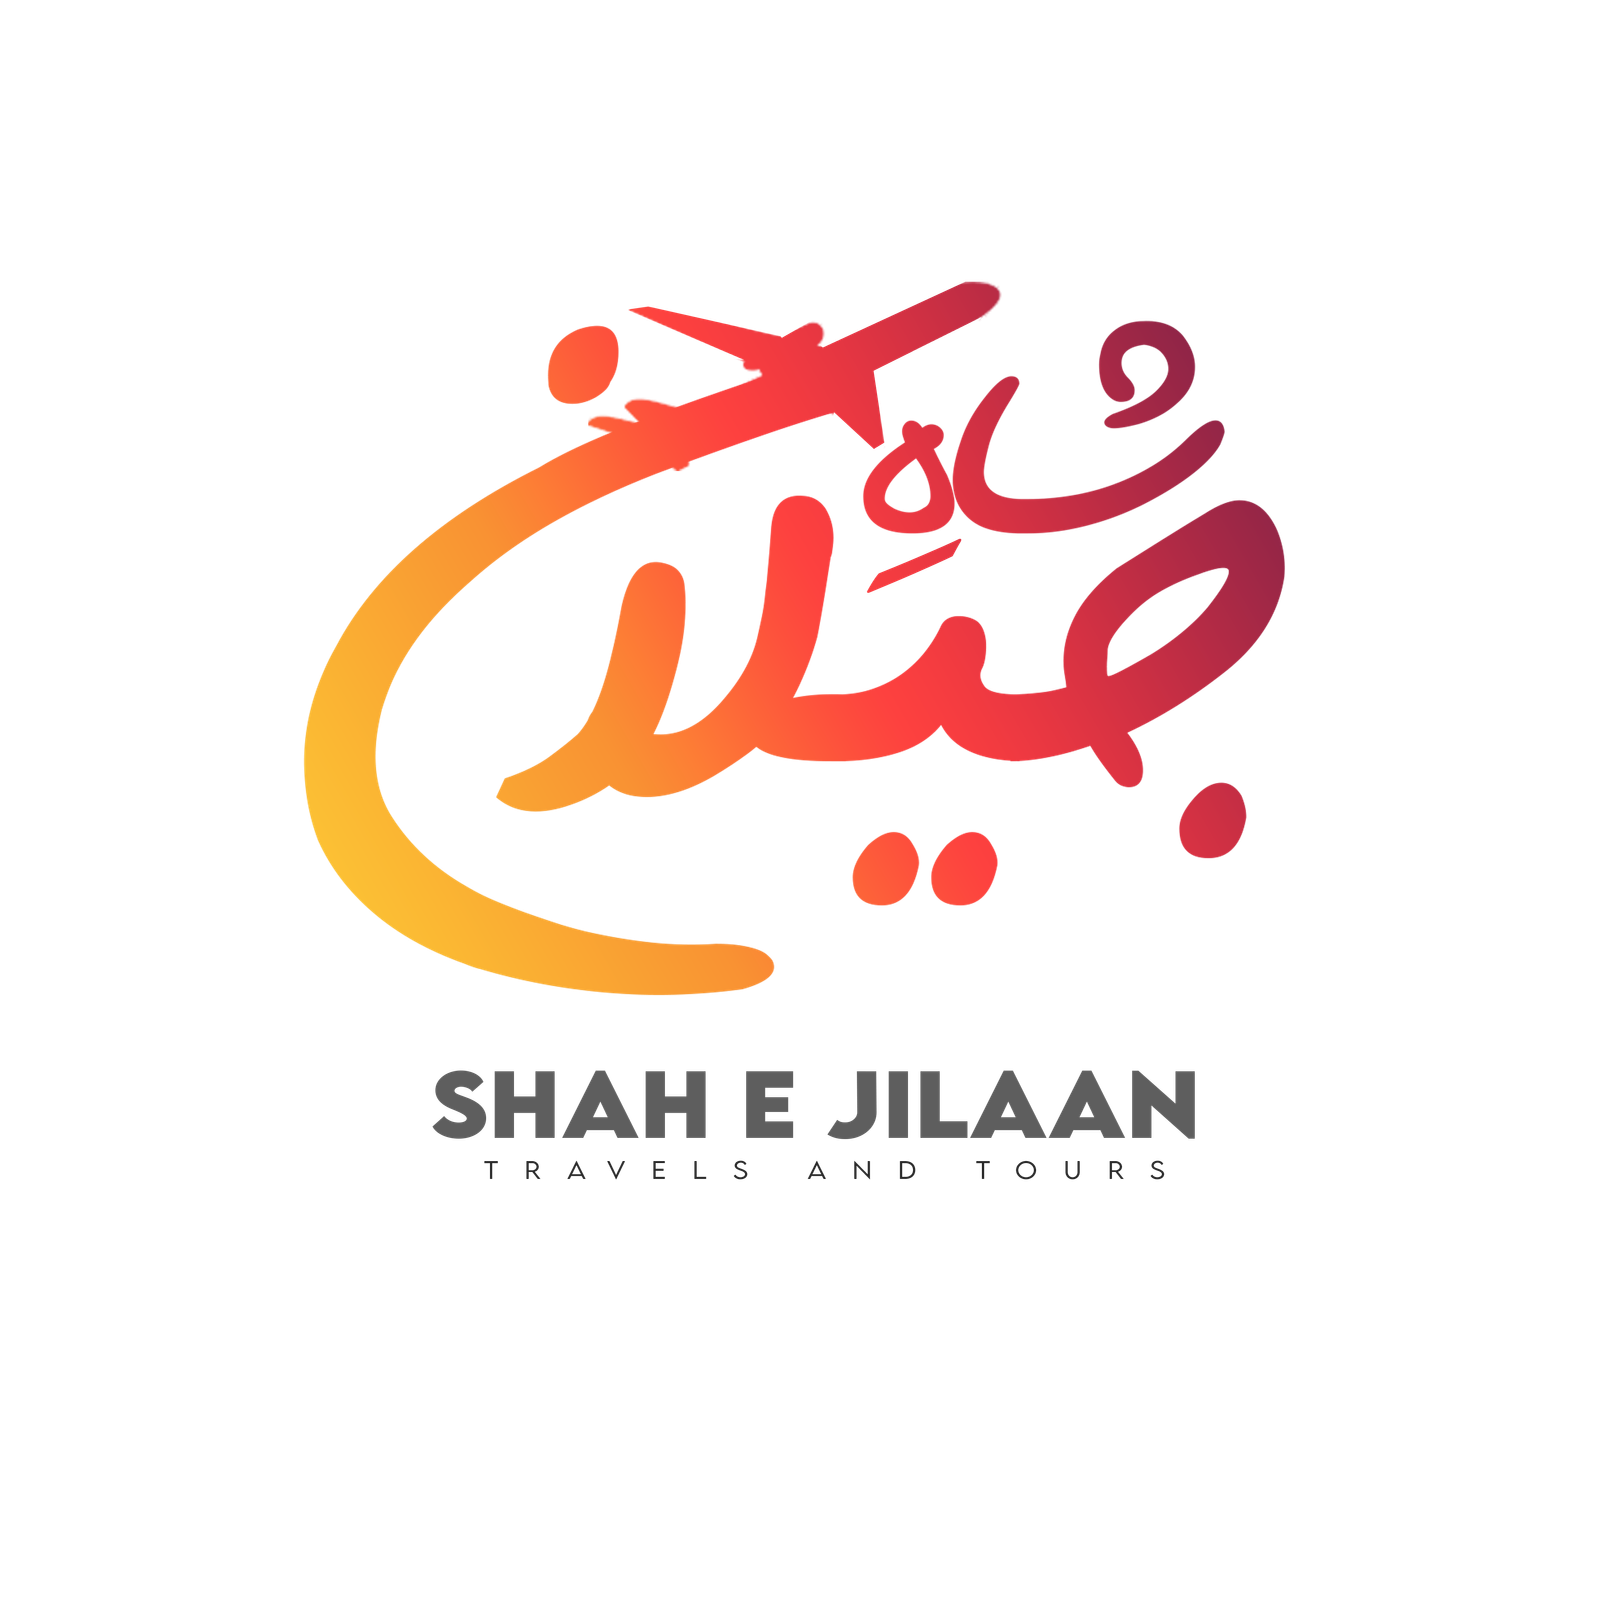 Shah E Jilaan Travel & Tours